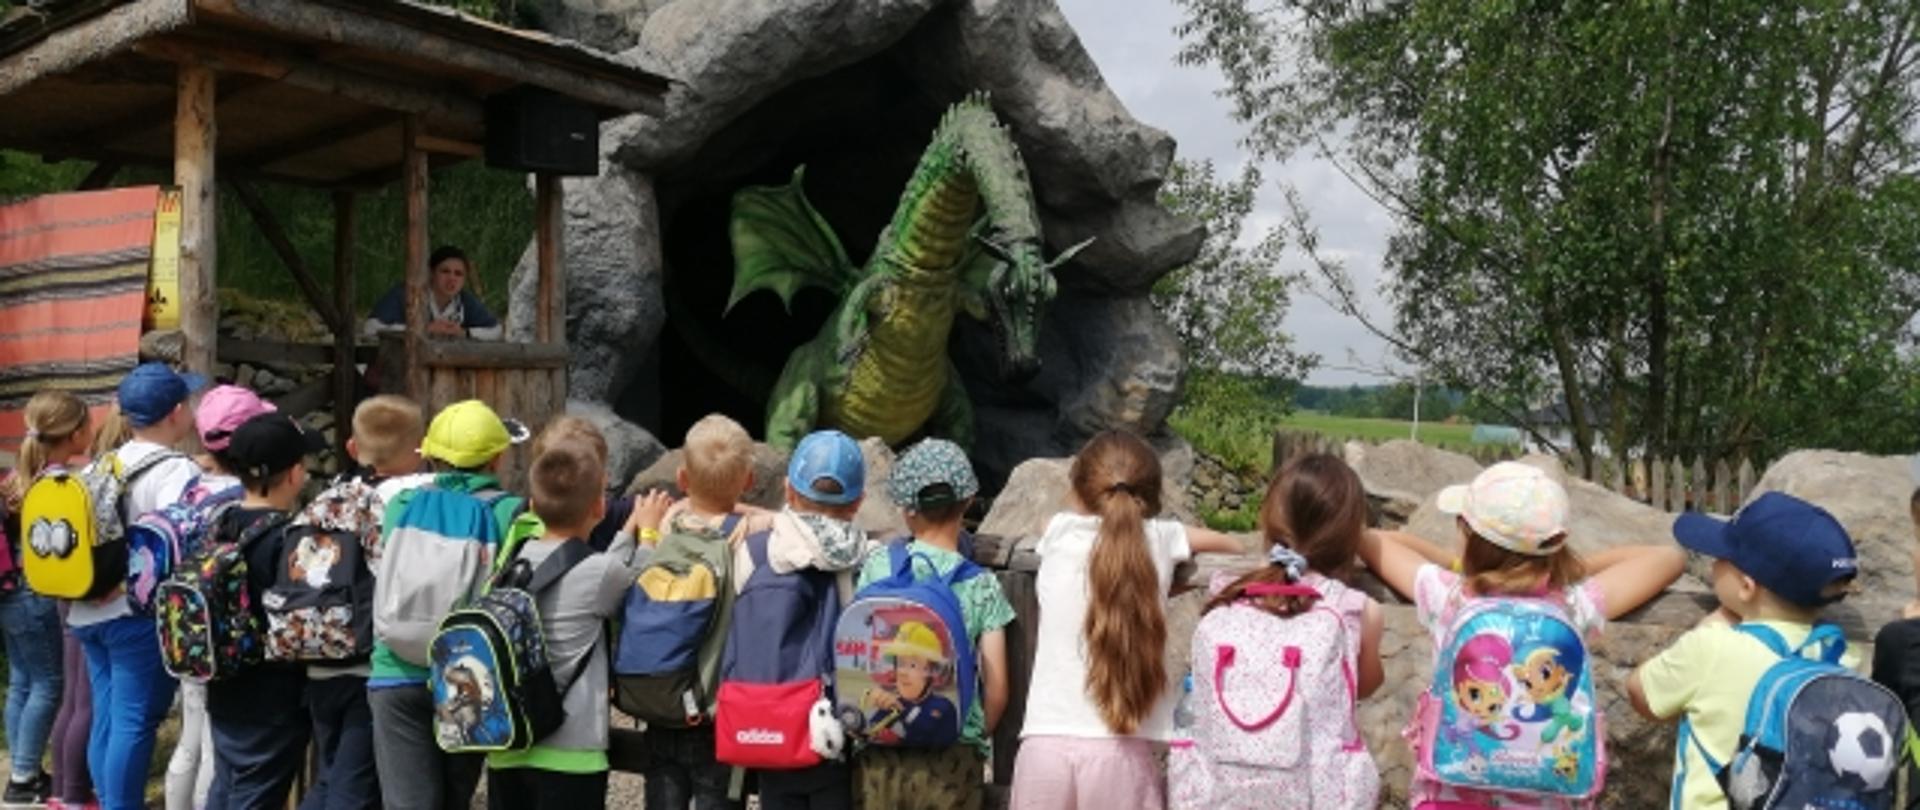 Zdjęcie przedstawia grupę dzieci patrzących na dużego, zielonego smoka.